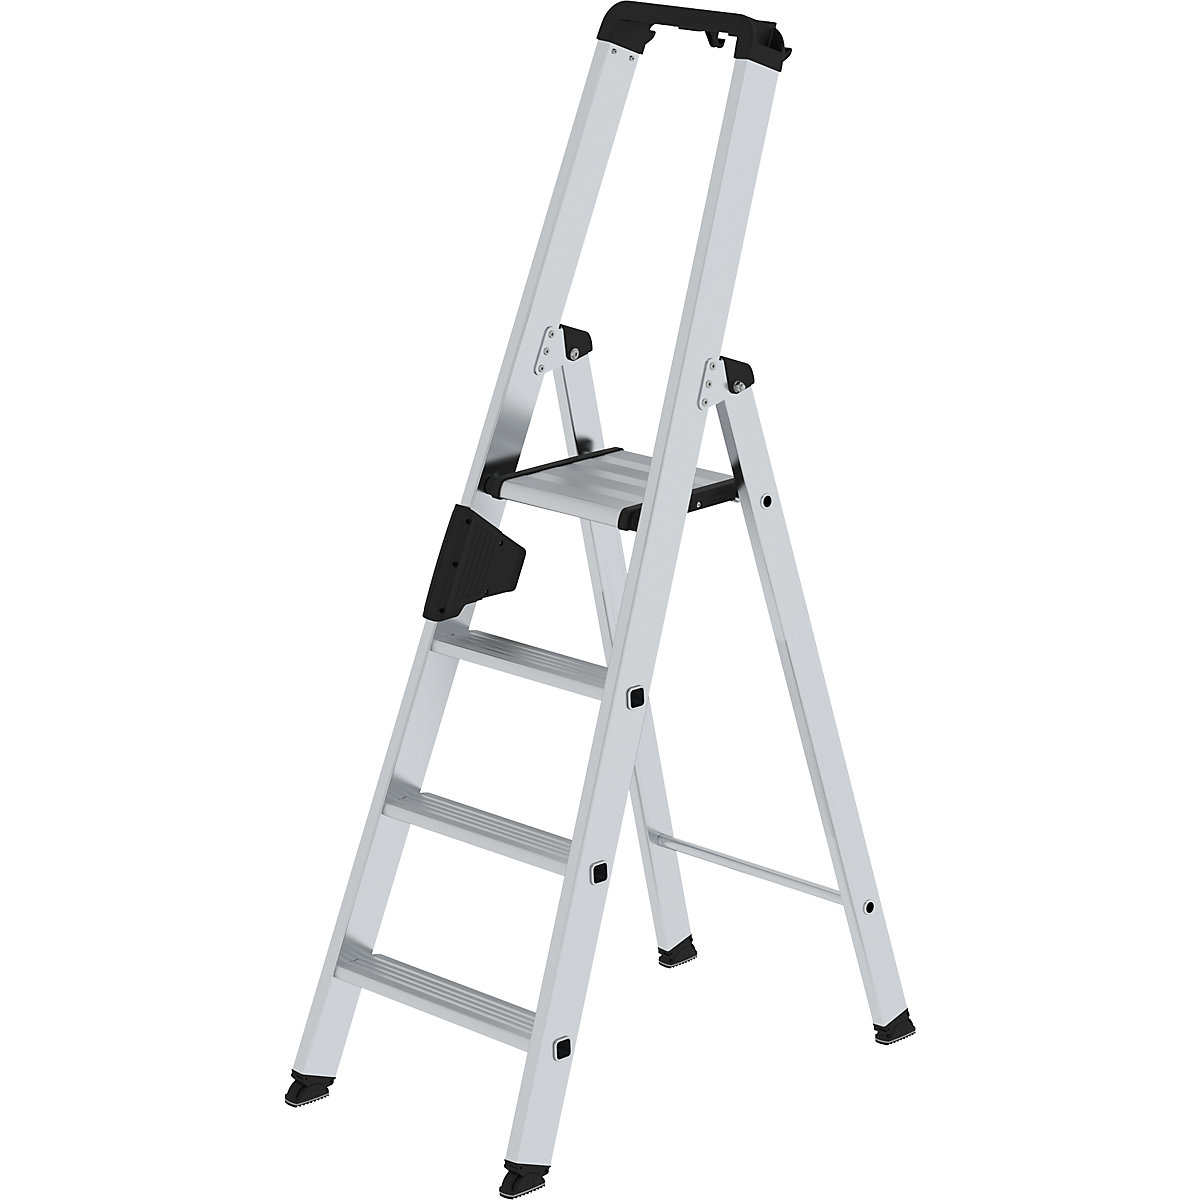 Escalera tipo tijera de peldaños planos, ascenso por un lado – MUNK, modelo extra cómodo con ergo-pad®, 4 escalones-13